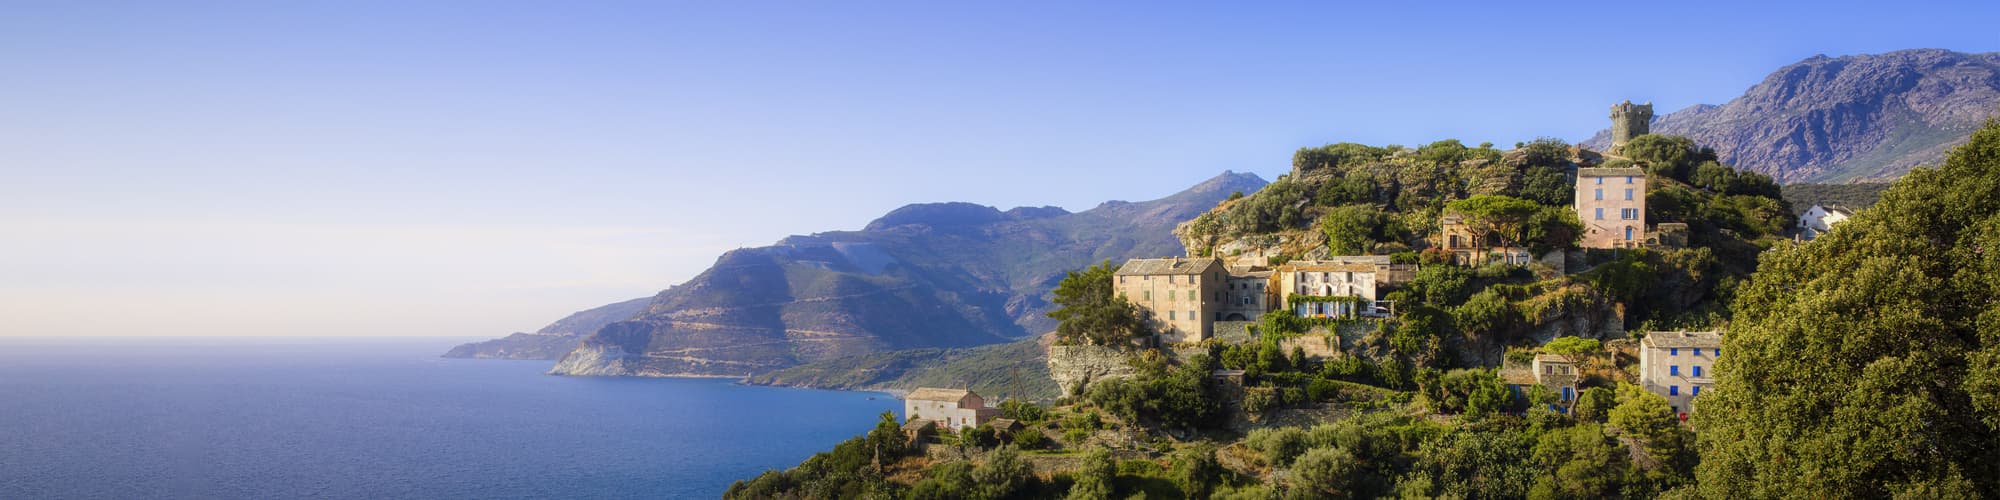 Randonnée en Corse : trek, GR20, vélo et randonnée © RolfSt